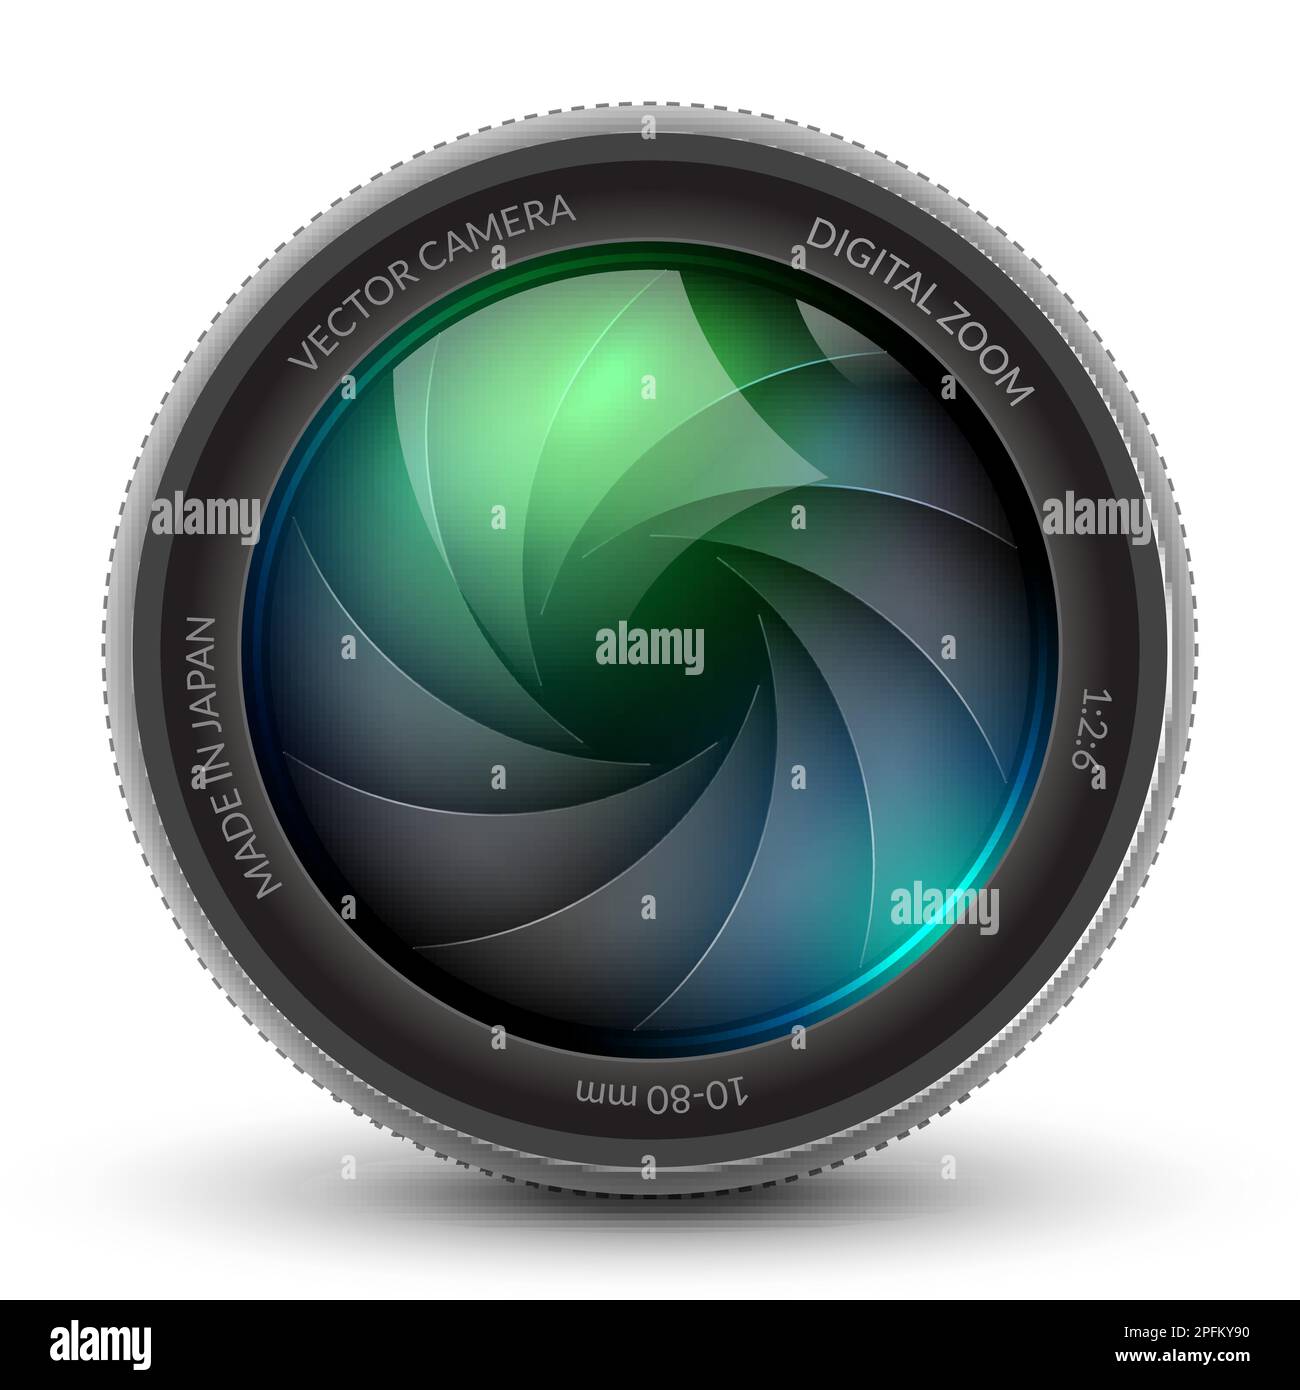 Kamera-Shutter-Fotofokus Objektiv mit isoliertem Design. Shutter-Zoom-Kamera für die Phtotographie Stock Vektor